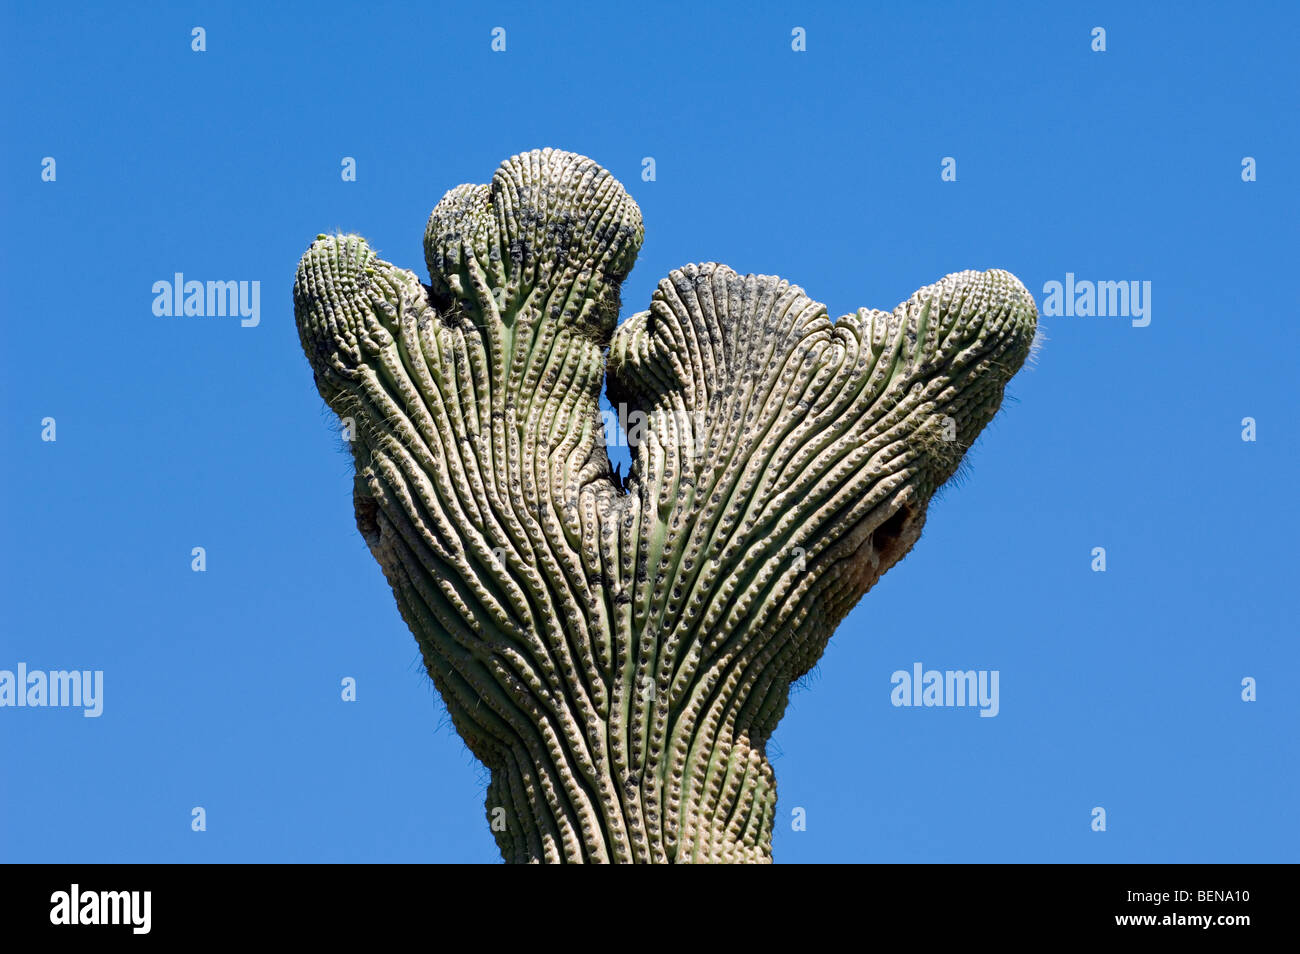 Crested Saguaro cactus (Carnegiea gigantea) in the Sonoran desert, Organ Pipe Cactus National Monument, Arizona, US Stock Photo